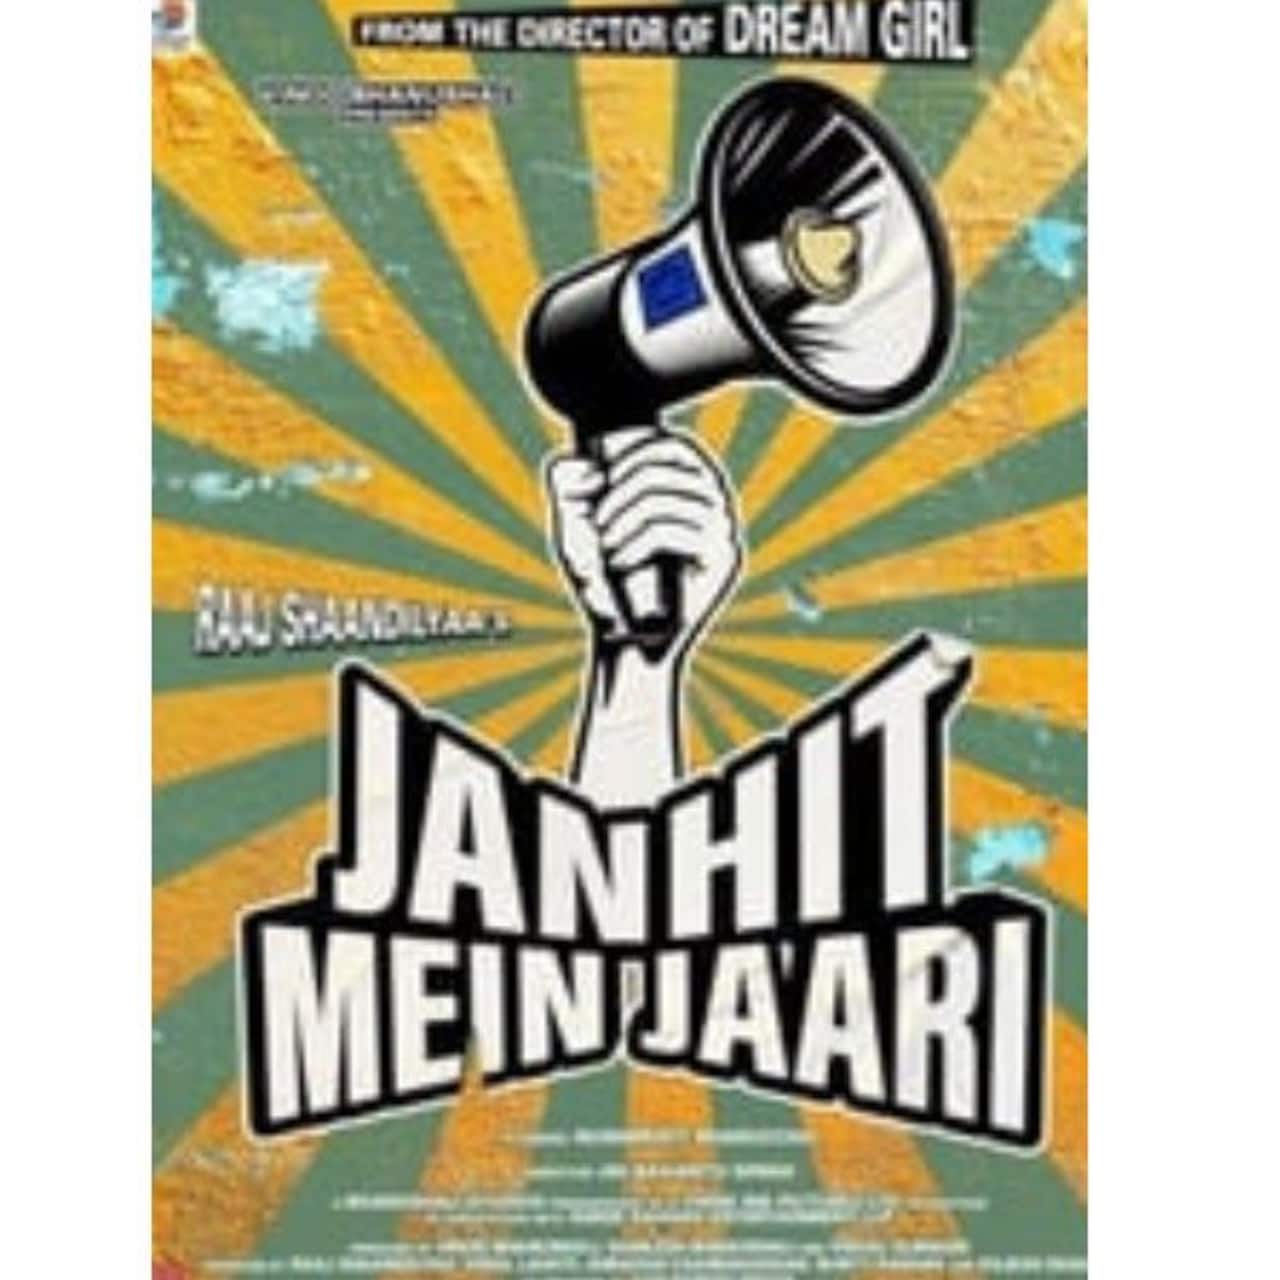 Janhit Mein Jaari - June 10